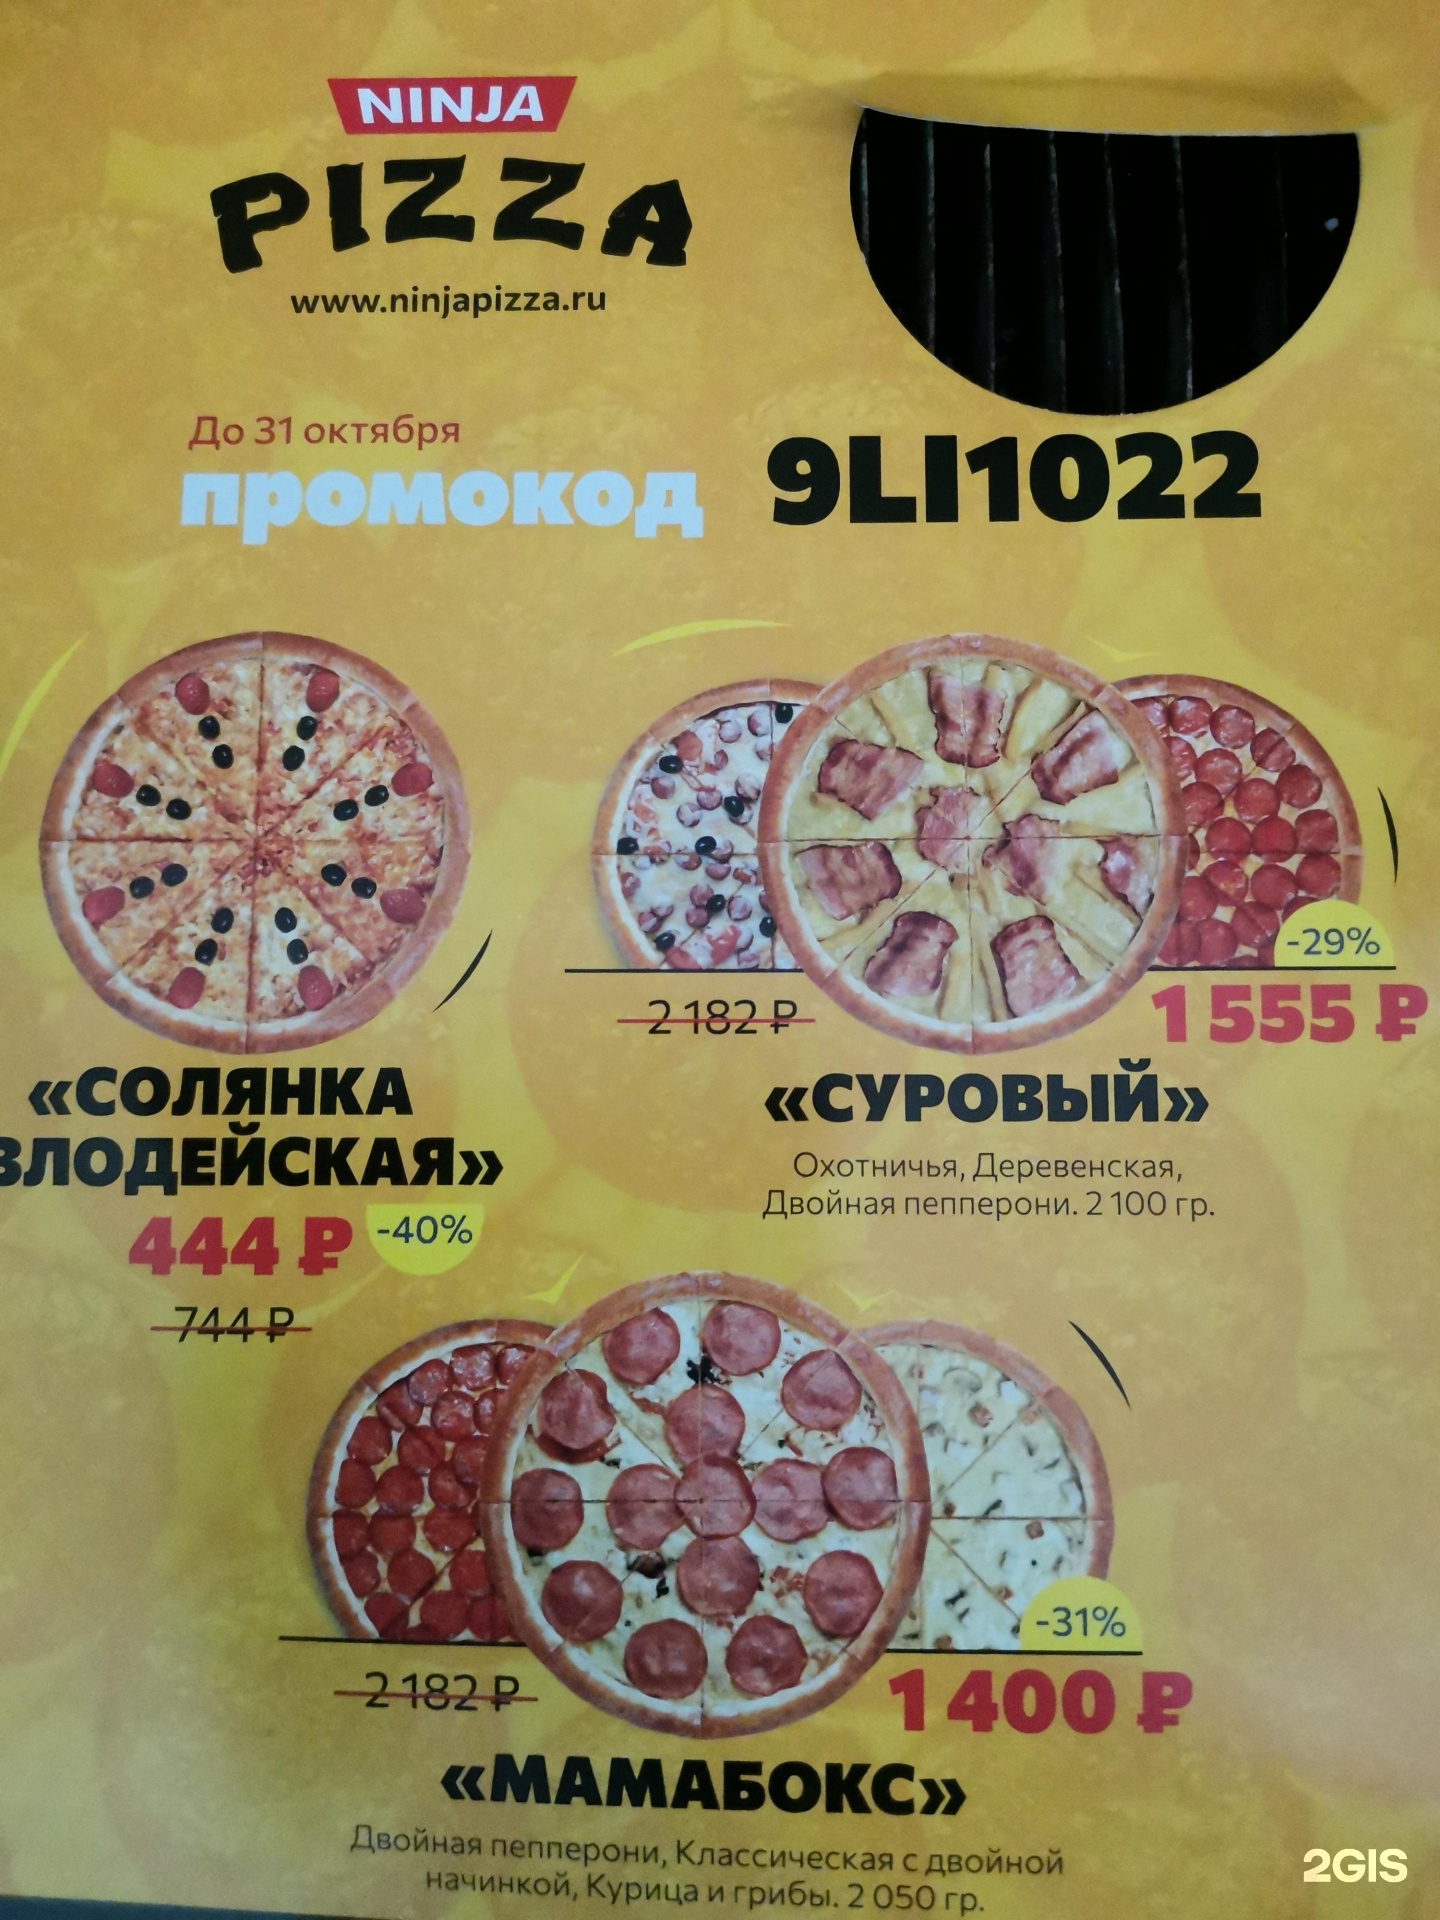 режим работы ниндзя пицца красноярск фото 102